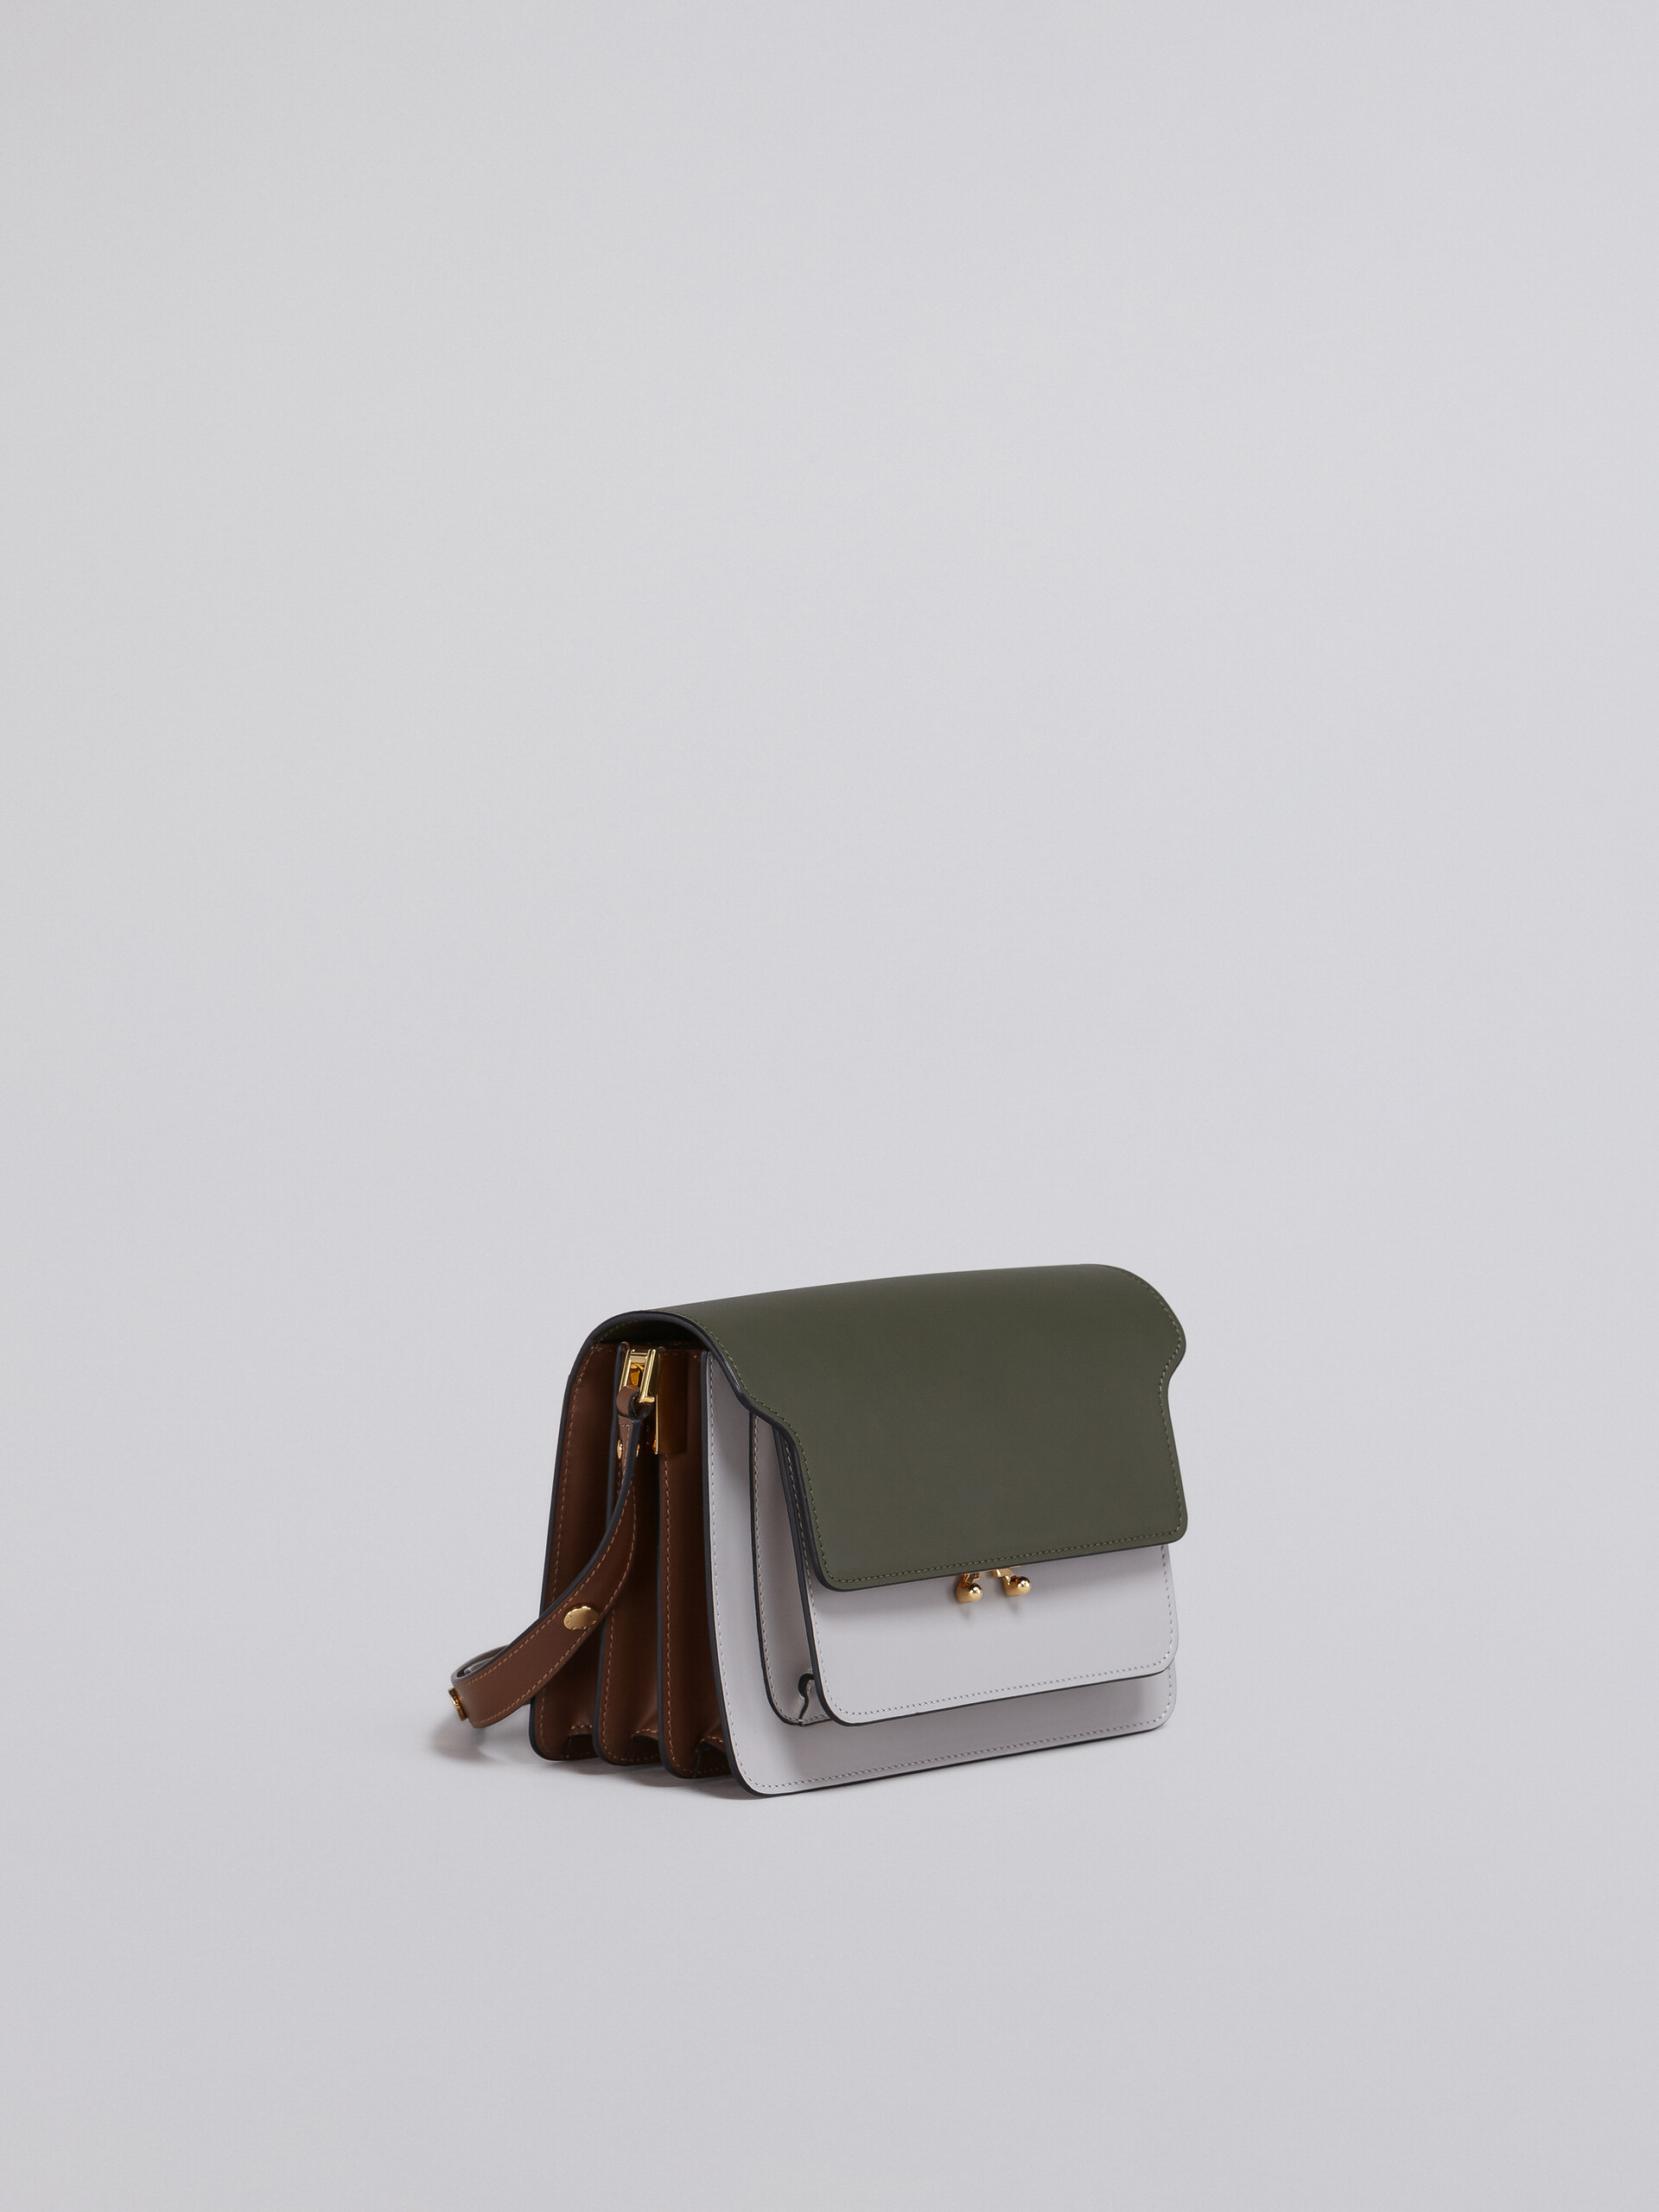 TRUNK bag in vitello liscio verde bianco e beige - Borse a spalla - Image 4